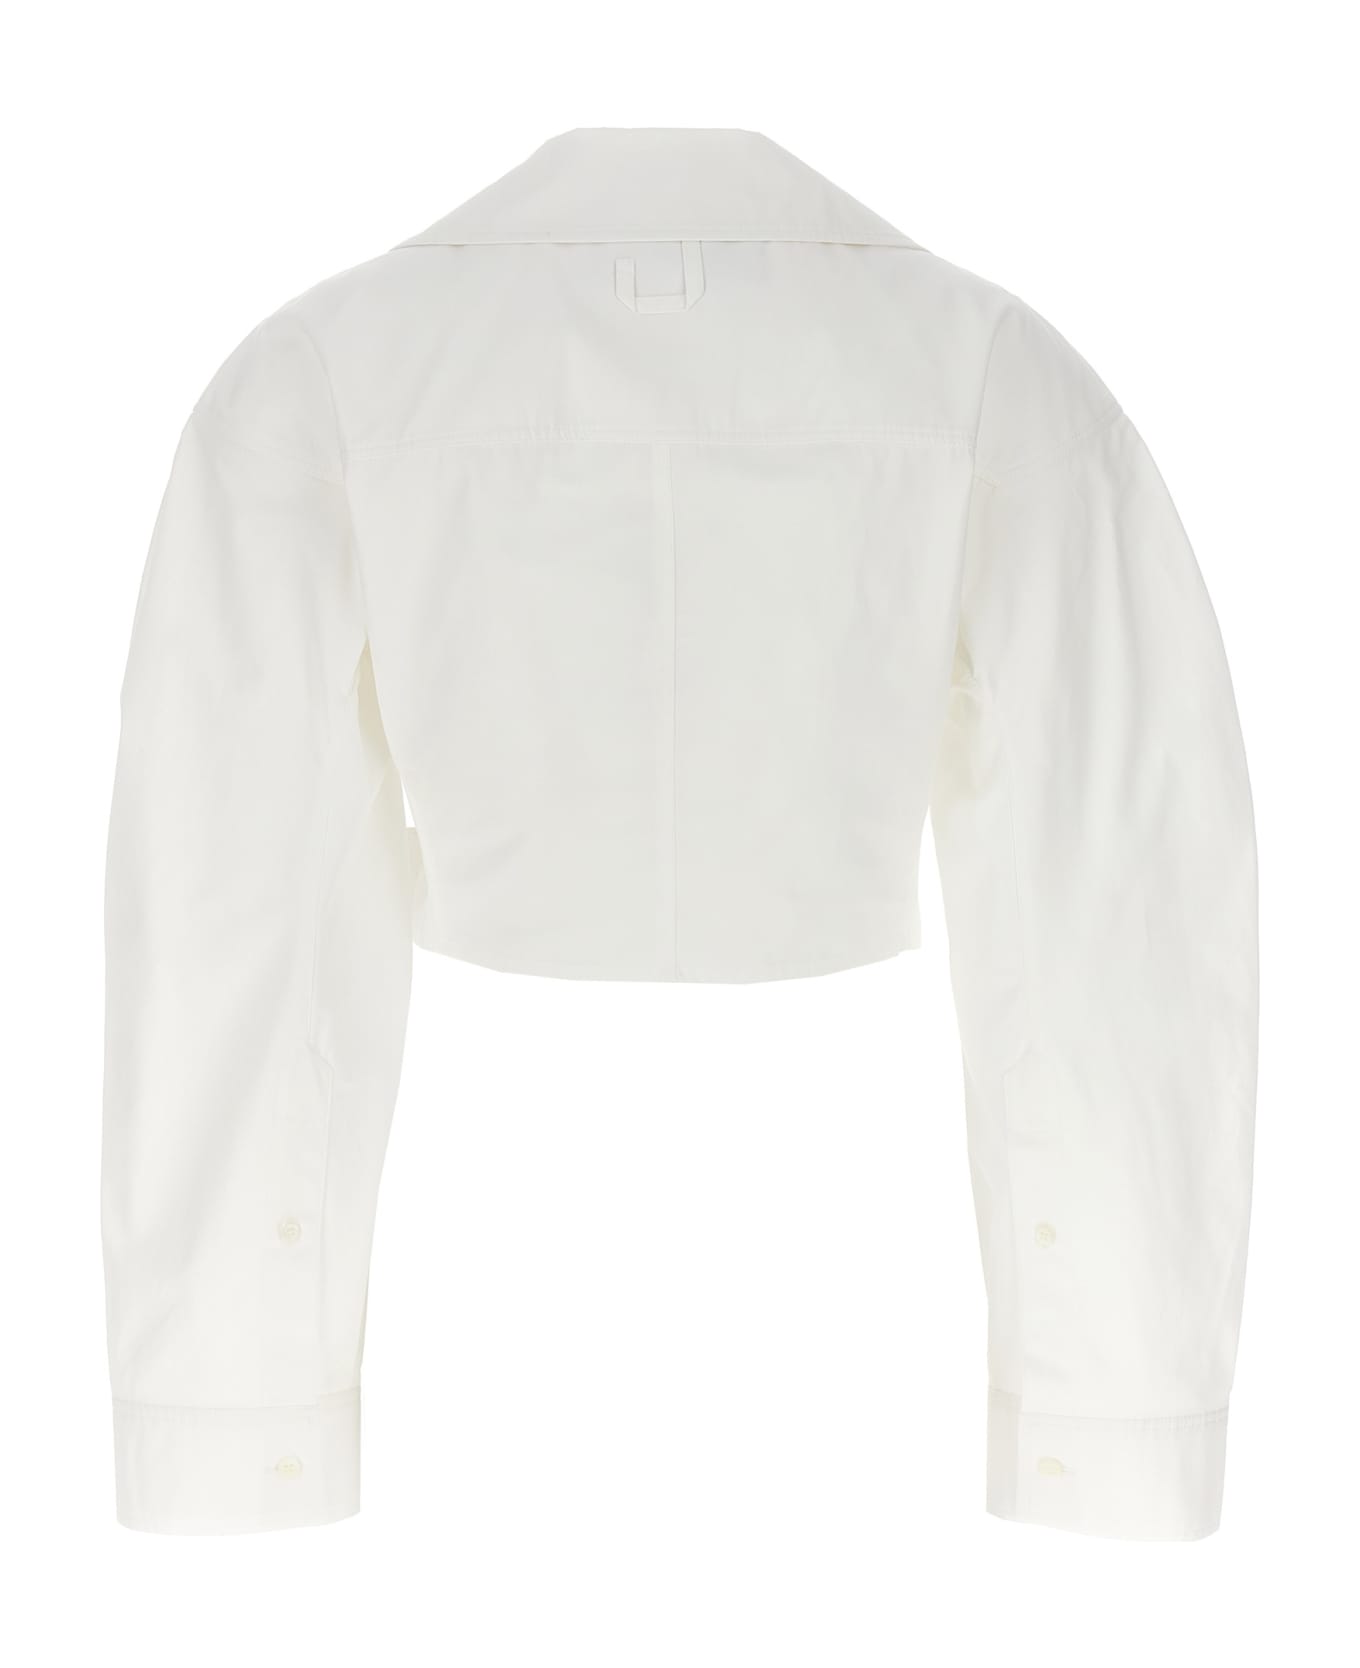 Jacquemus Obra Bolero Crop Shirt - White シャツ